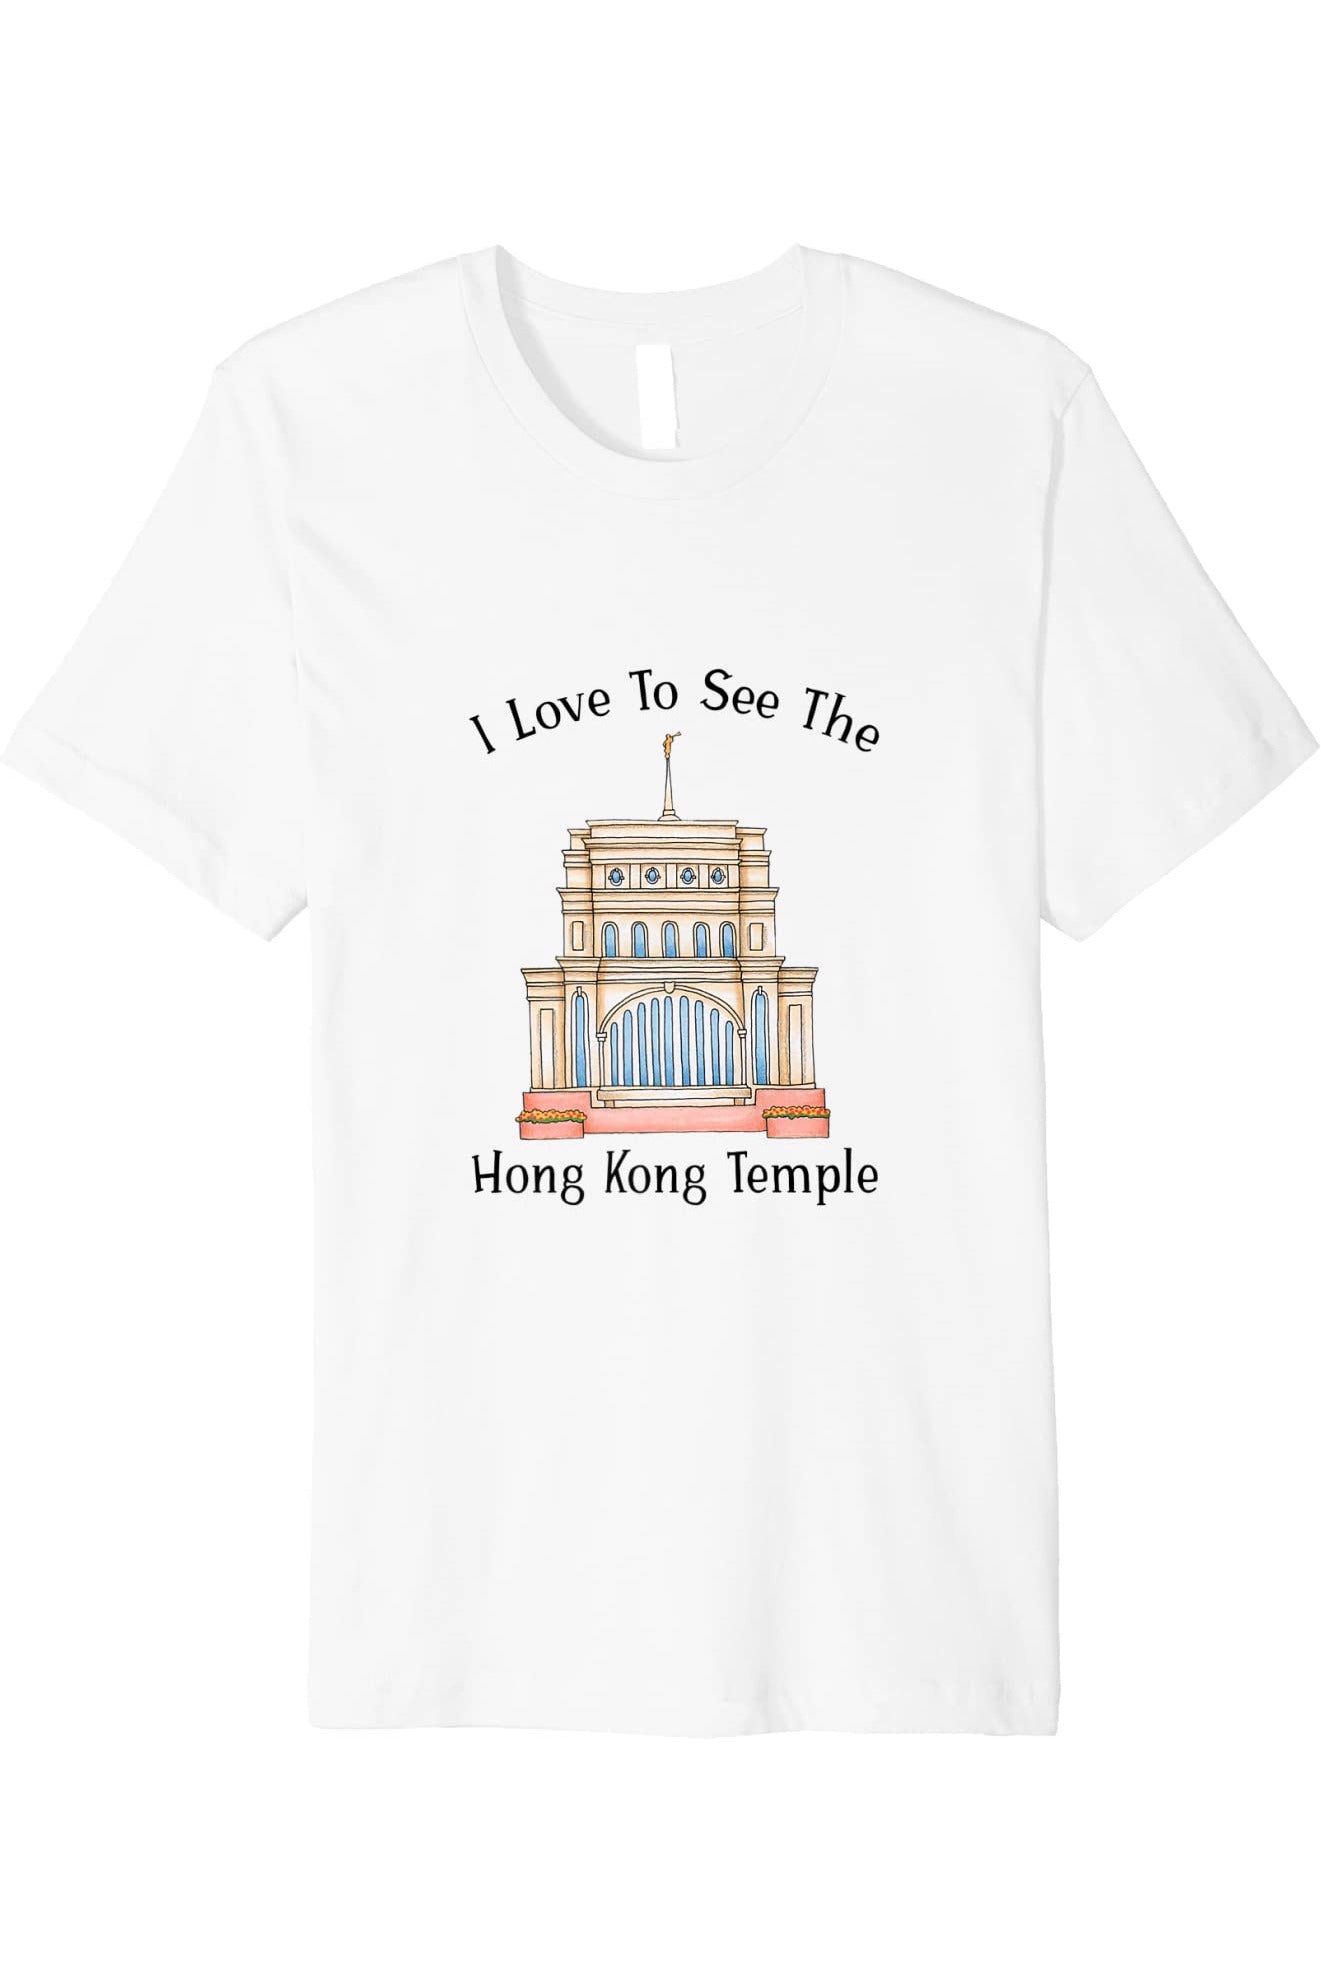 Hong Kong China Temple T-Shirt - Premium - Happy Style (English) US